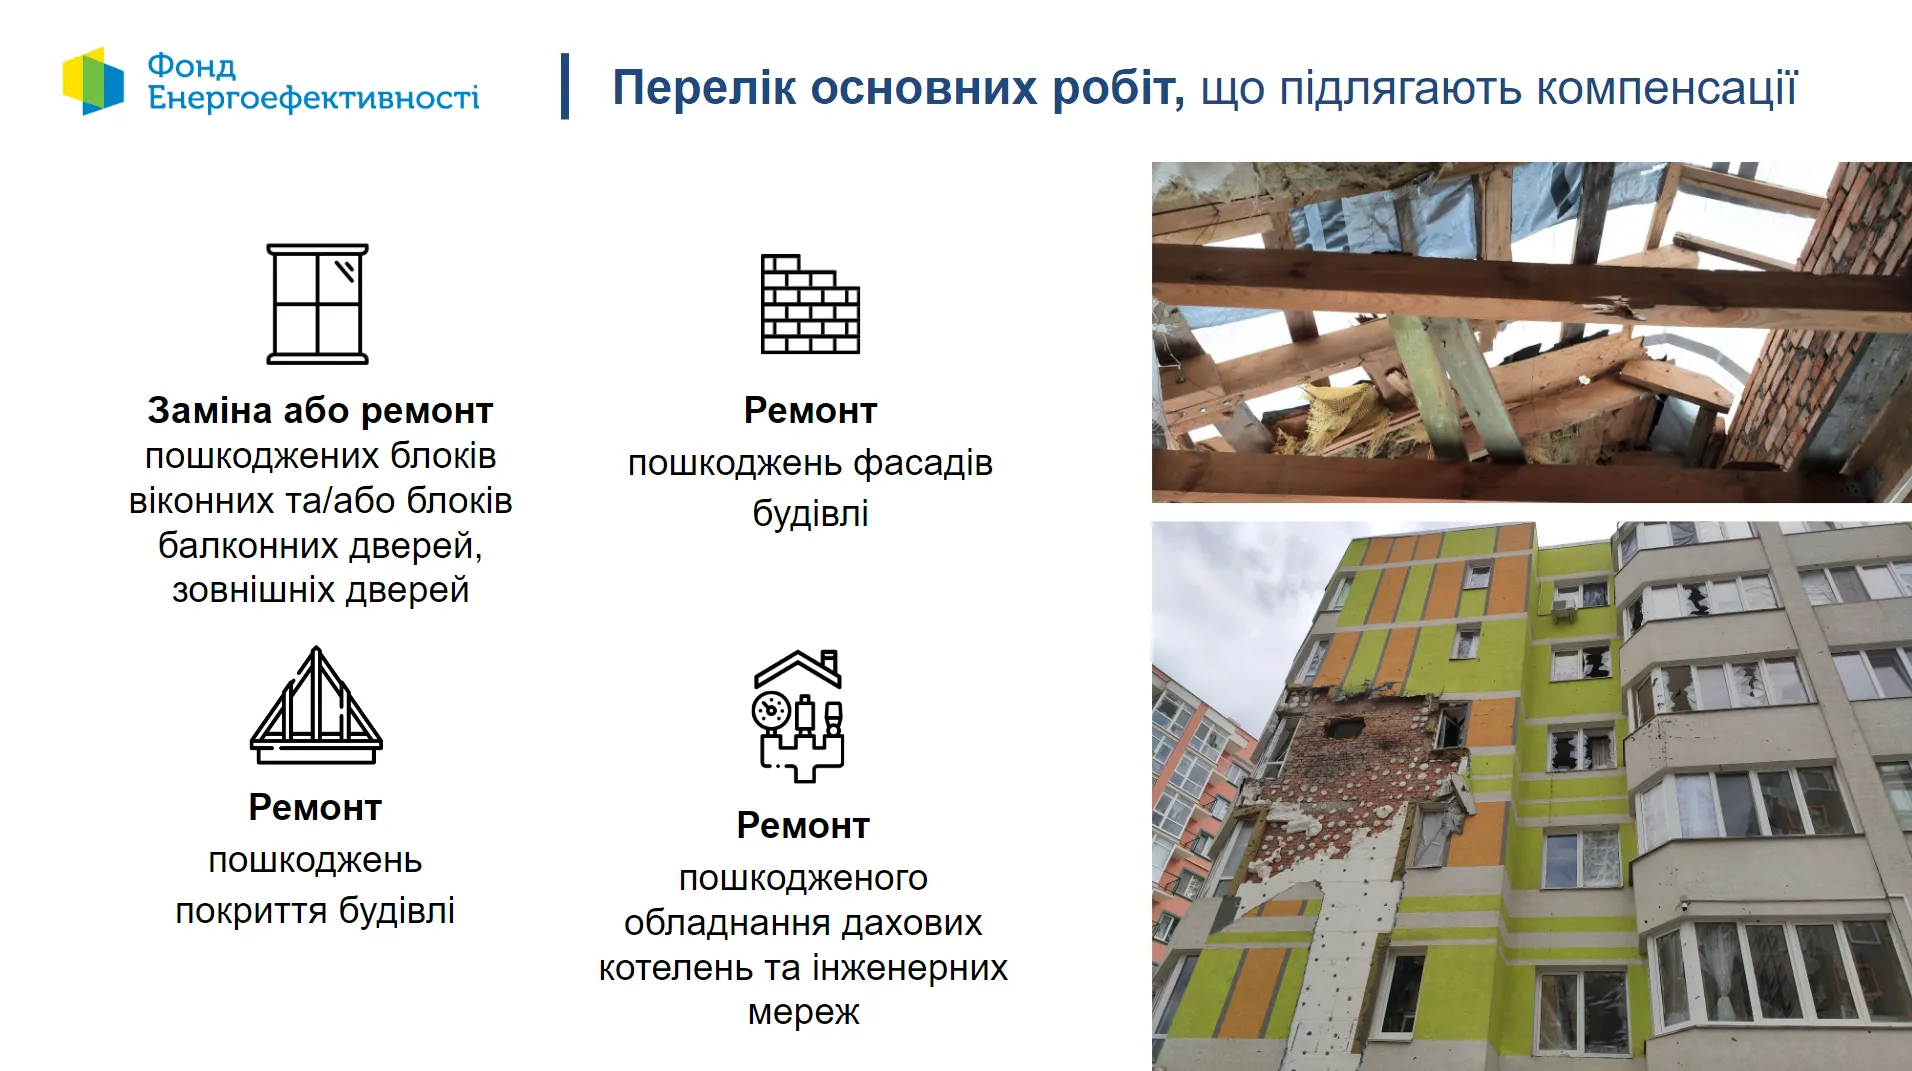 ЕС выделил 5 миллионов евро на восстановление поврежденного жилья в Украине